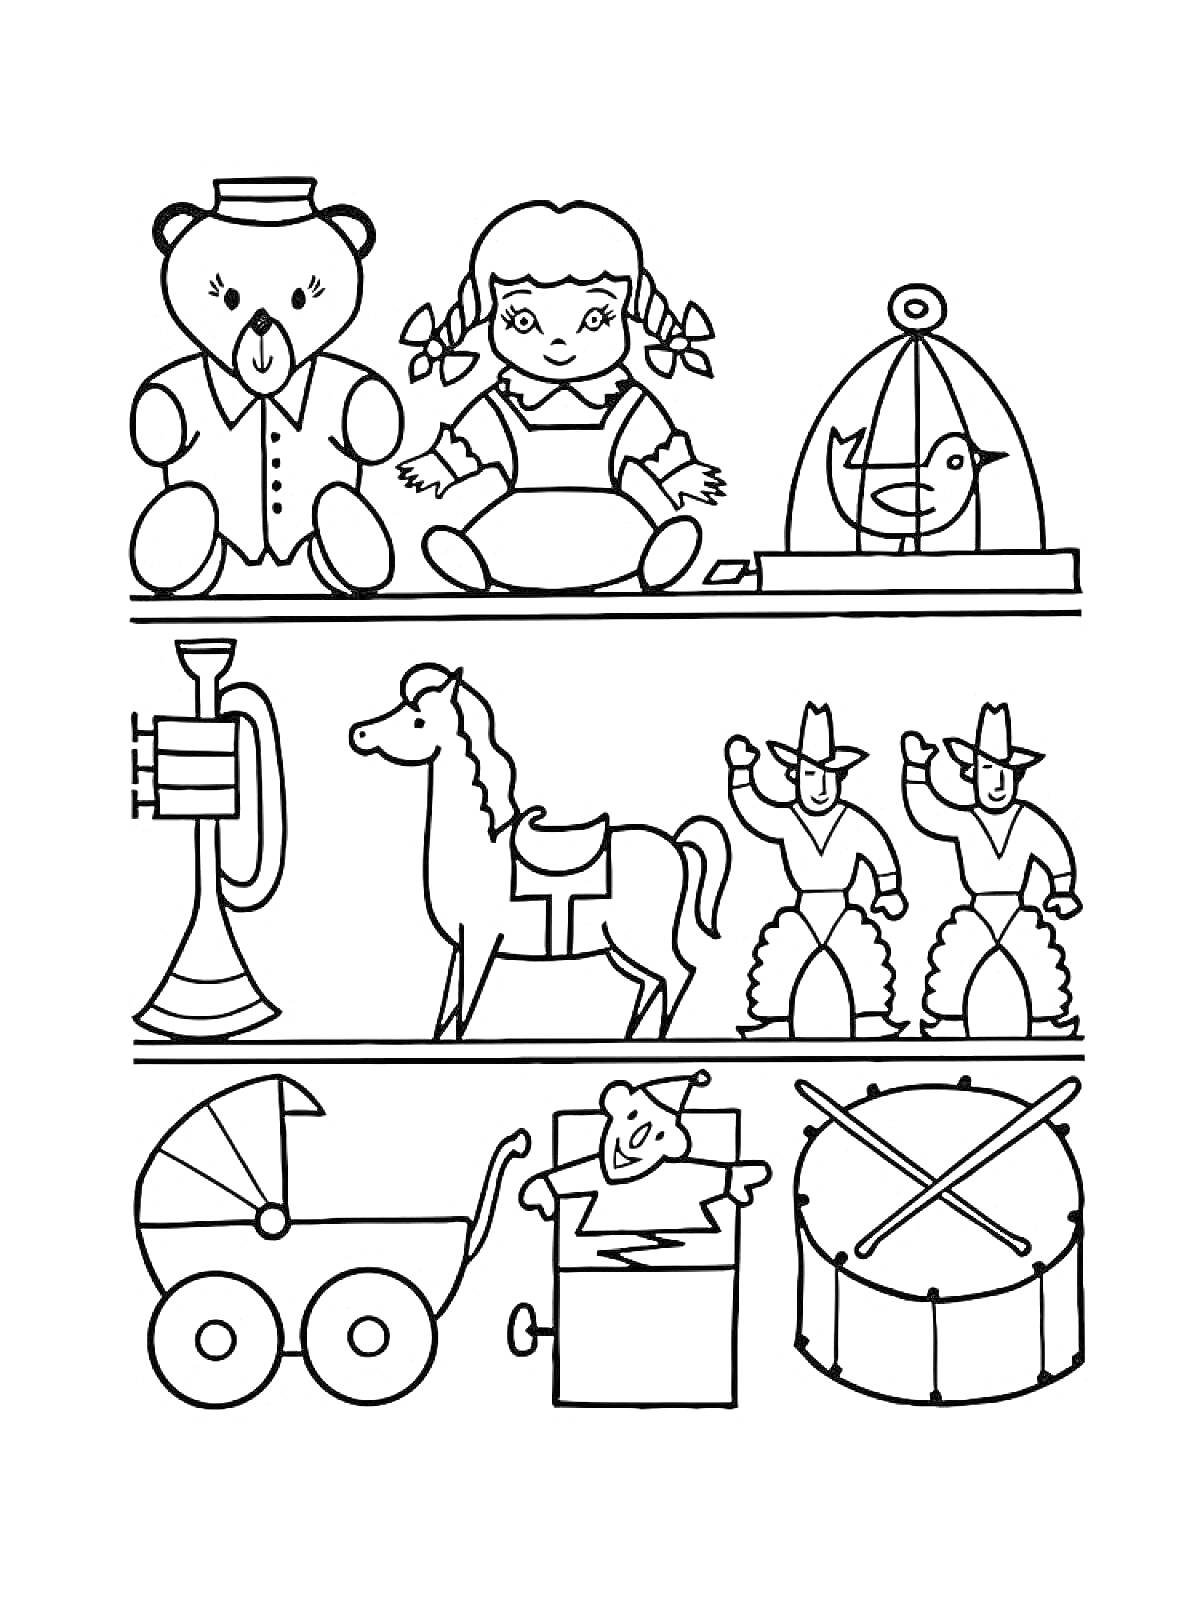 Магазин игрушек с медведем, куклой, клеткой с птицей, трубой, лошадкой, ковбоями, коляской, коробкой с куклой и барабаном